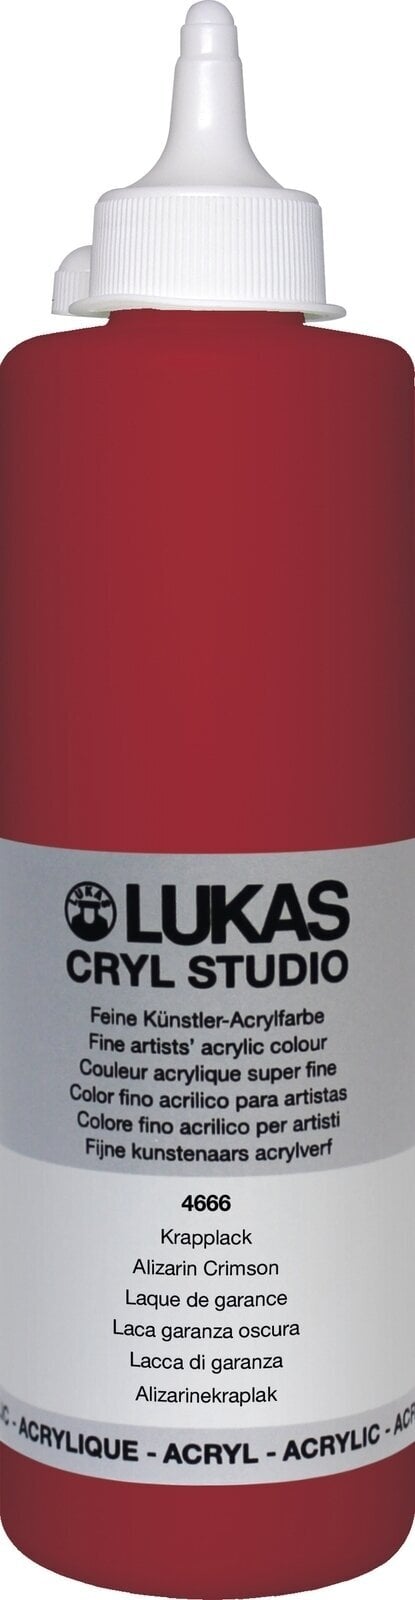 Akrylová farba Lukas Cryl Studio Akrylová farba 500 ml Alizarin Crimson